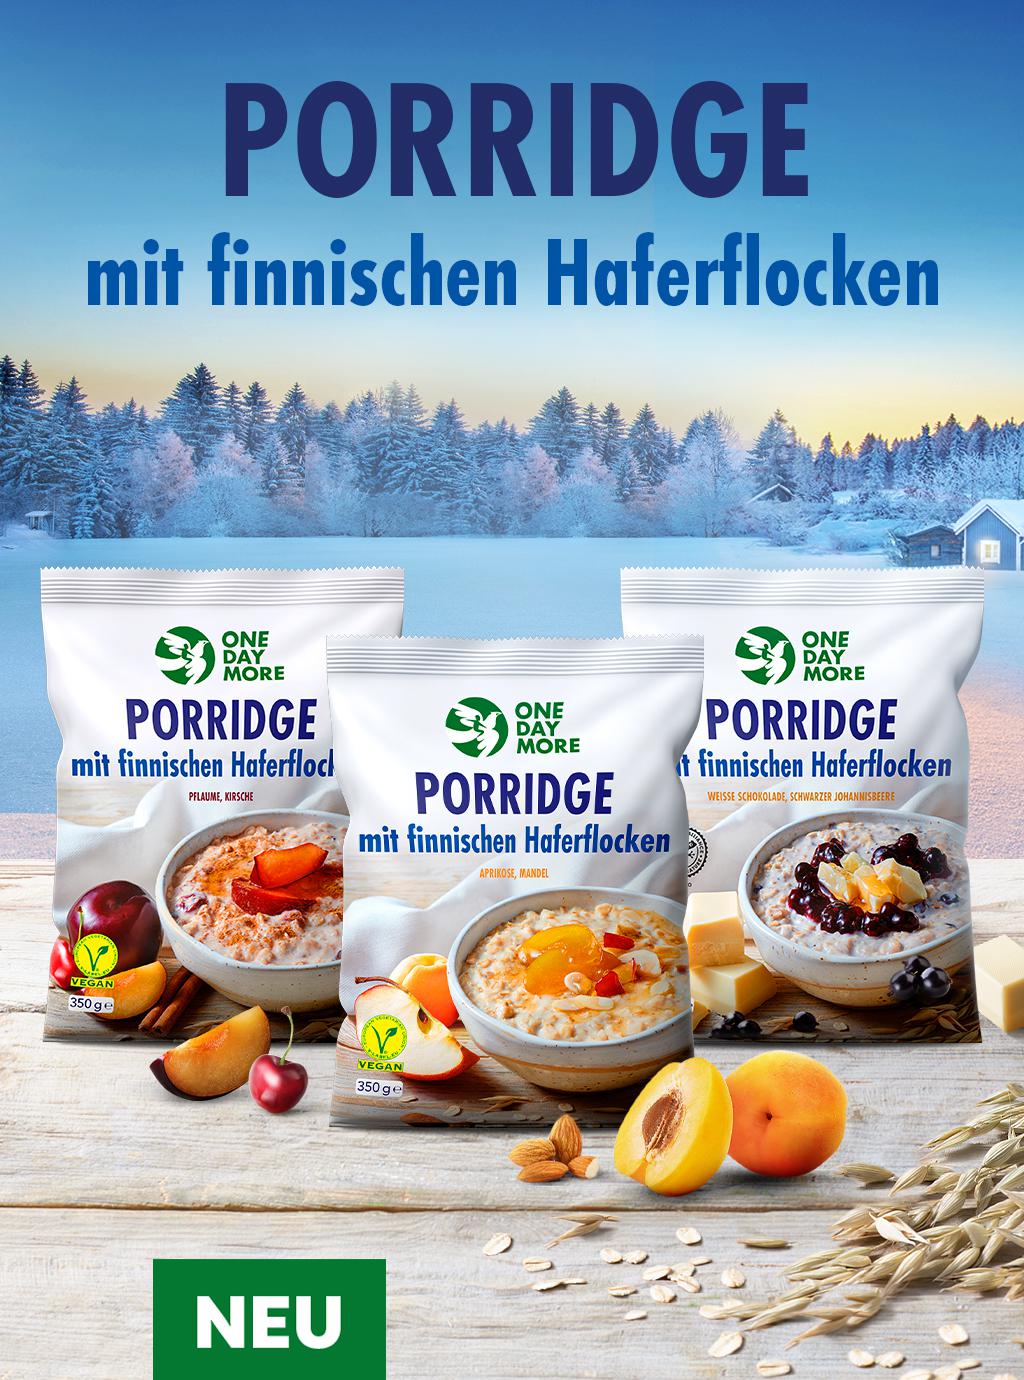 neu Porridge mit finnischen Haferflocken